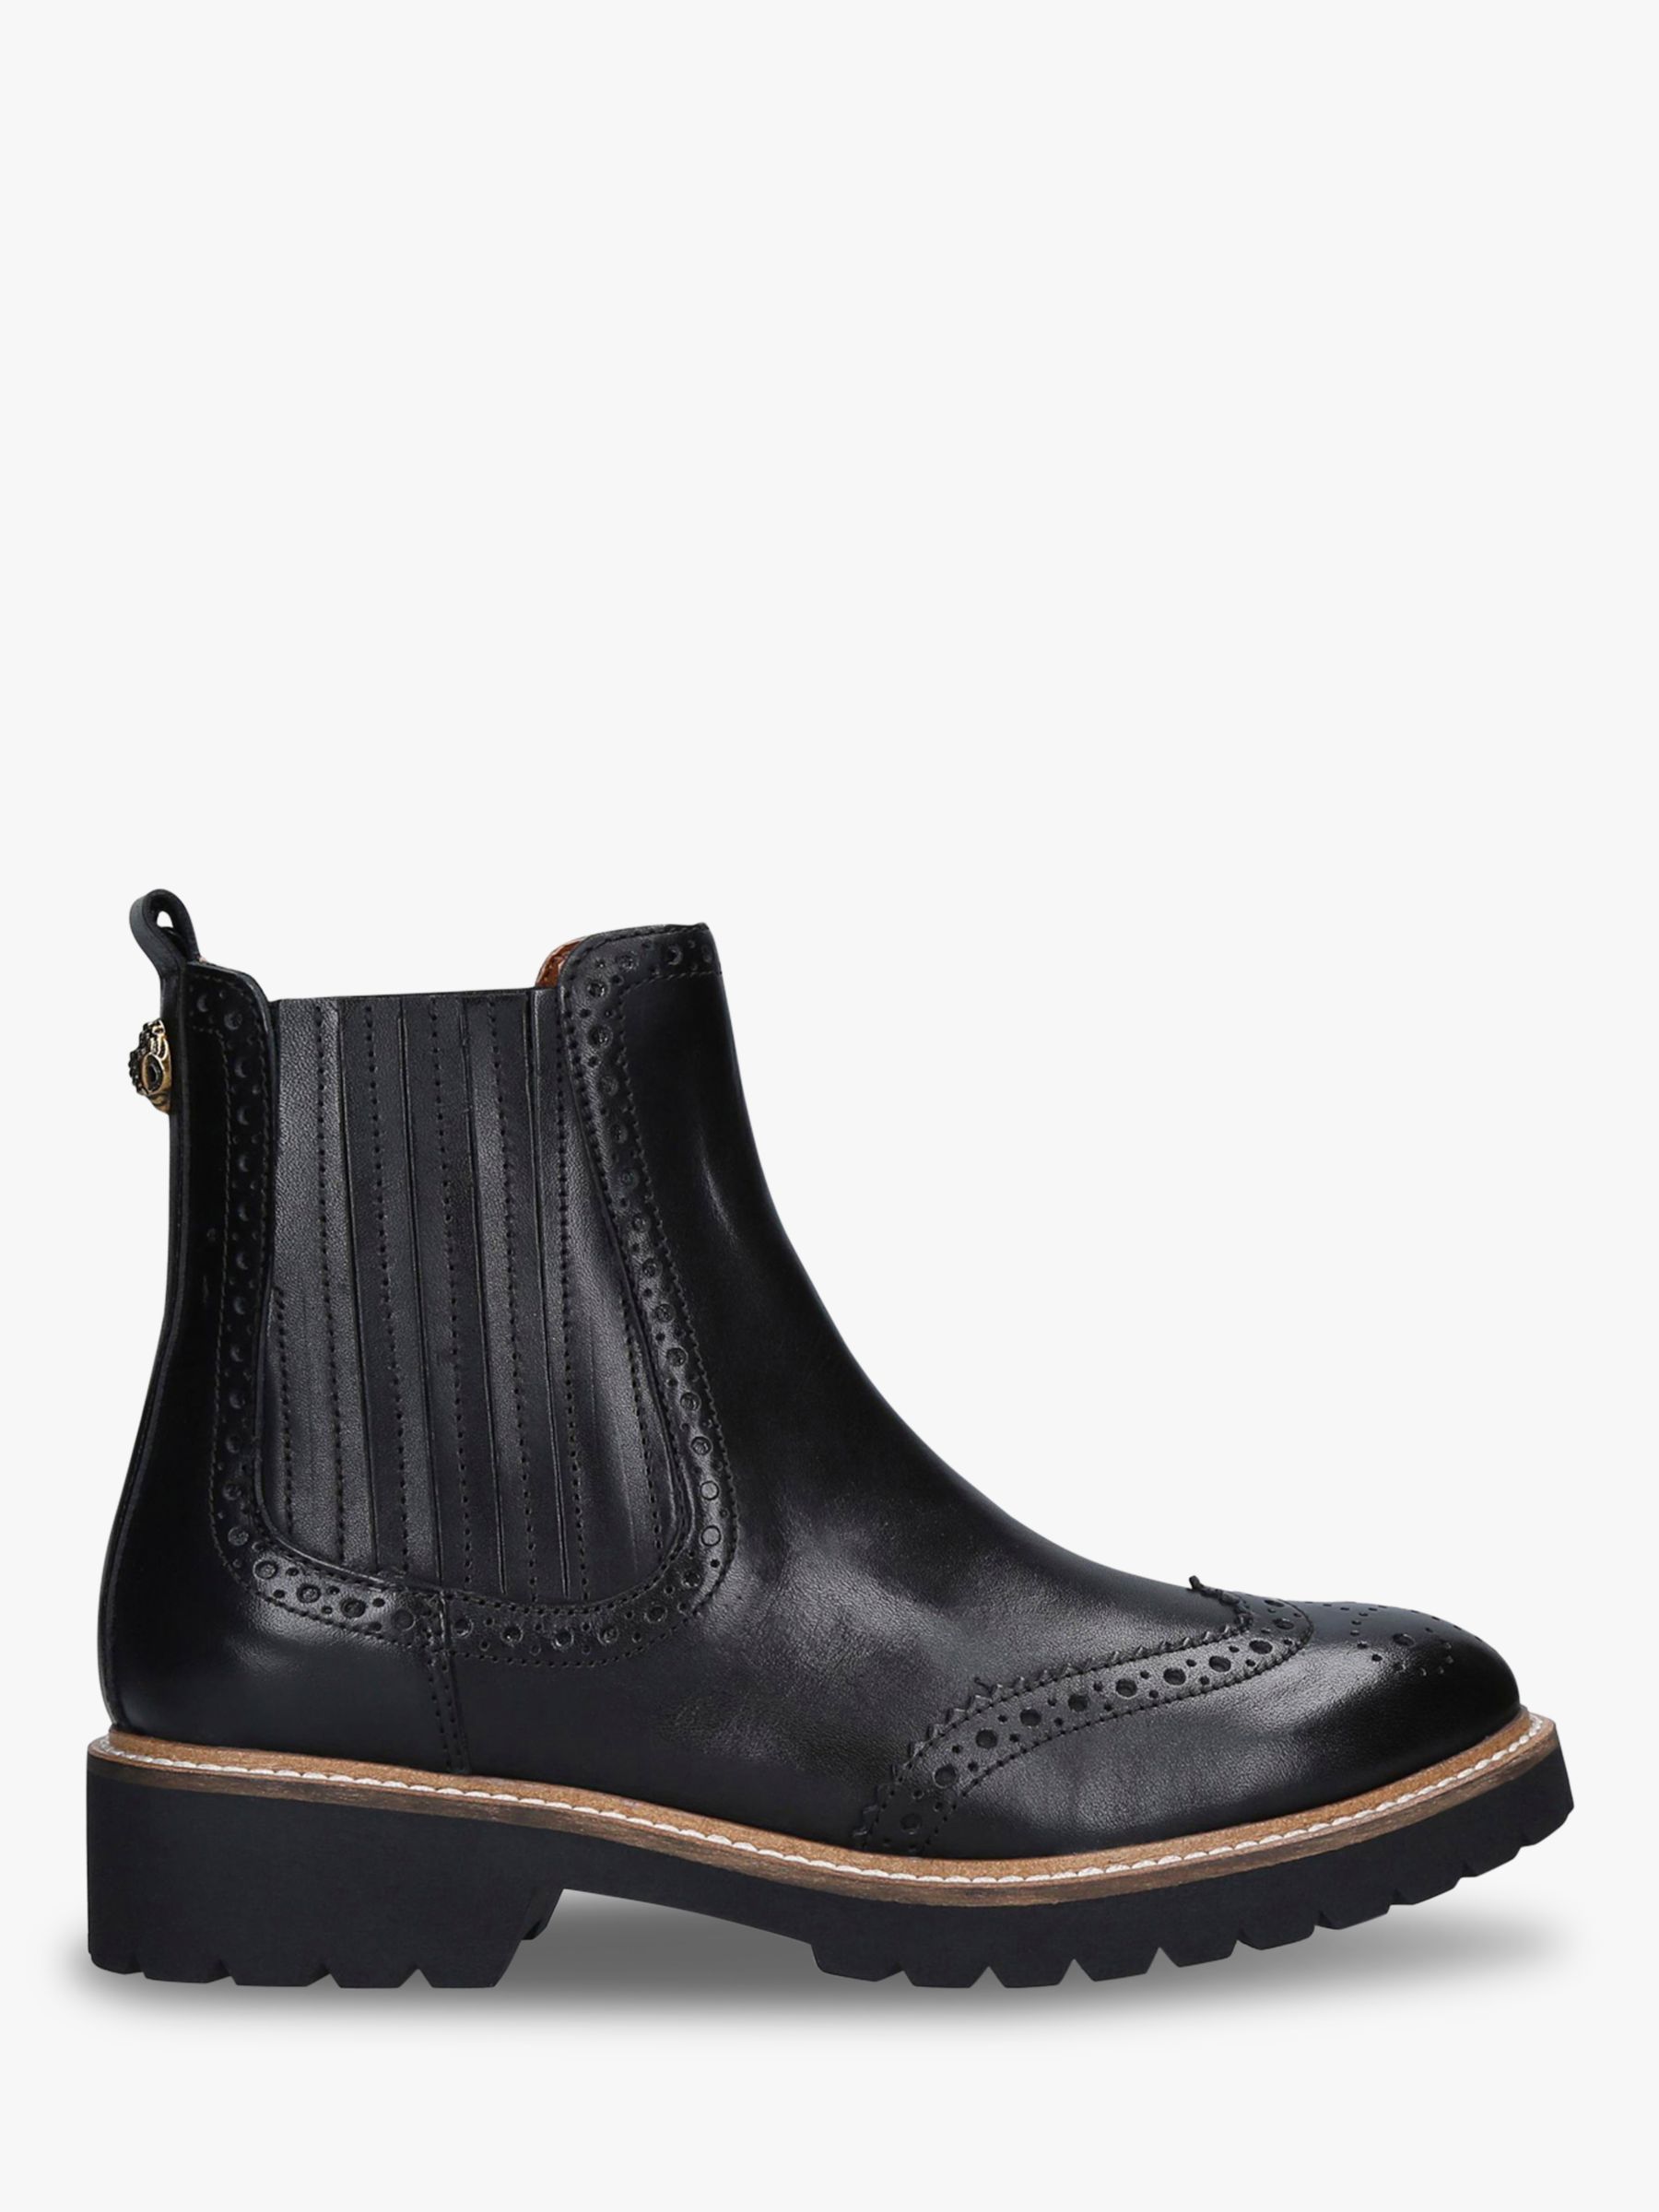 Kurt Geiger London Reina Leather Eagle Embellished Ankle Boots, Black